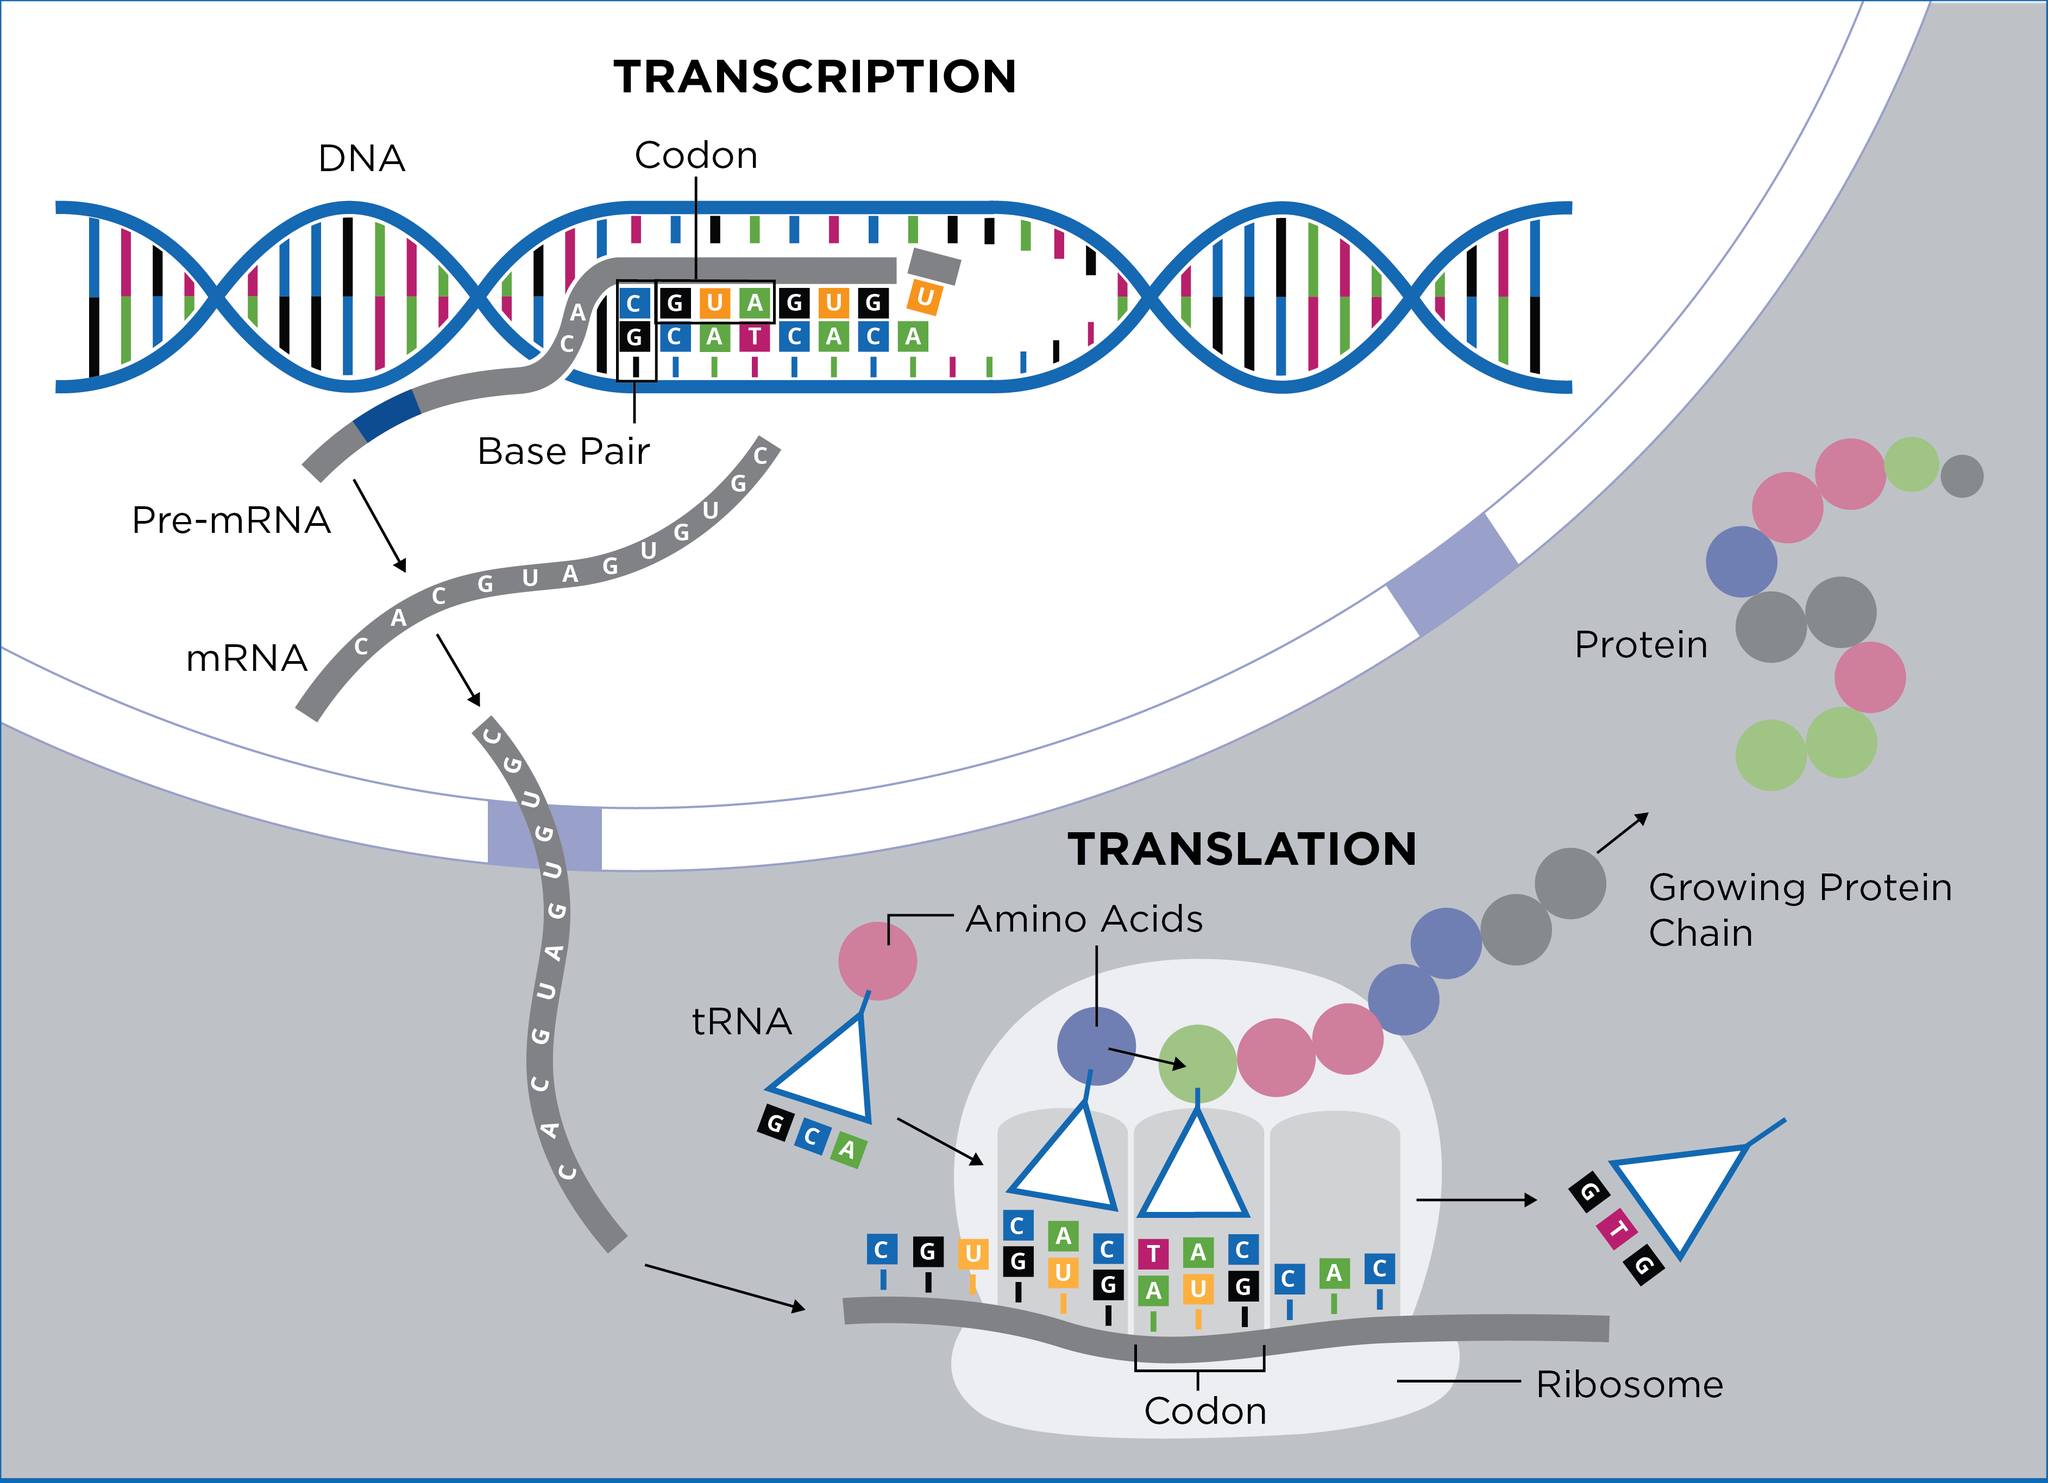 Генетично Оръжие CRISPR CAS9 СТОПИРА 4 КОДОНА